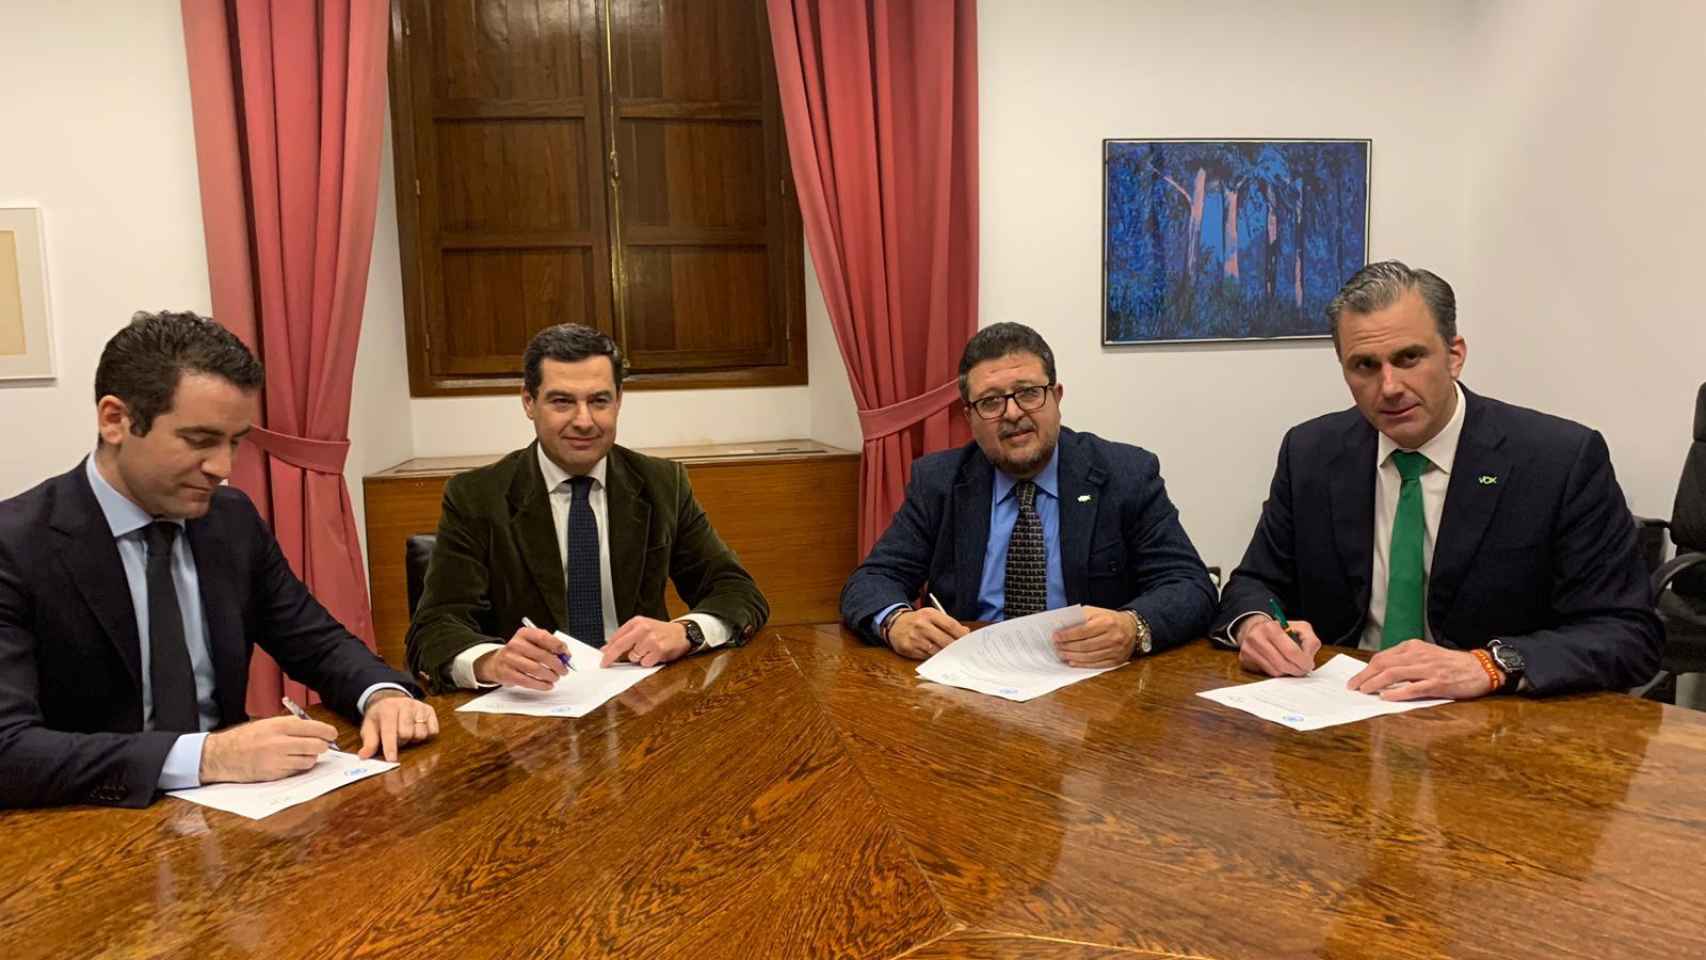 Imagen del acuerdo entre Juanma Moreno (PP) y Francisco Serrano (Vox) en Andalucía, con Ortega Smith y  teodoro García Egea.